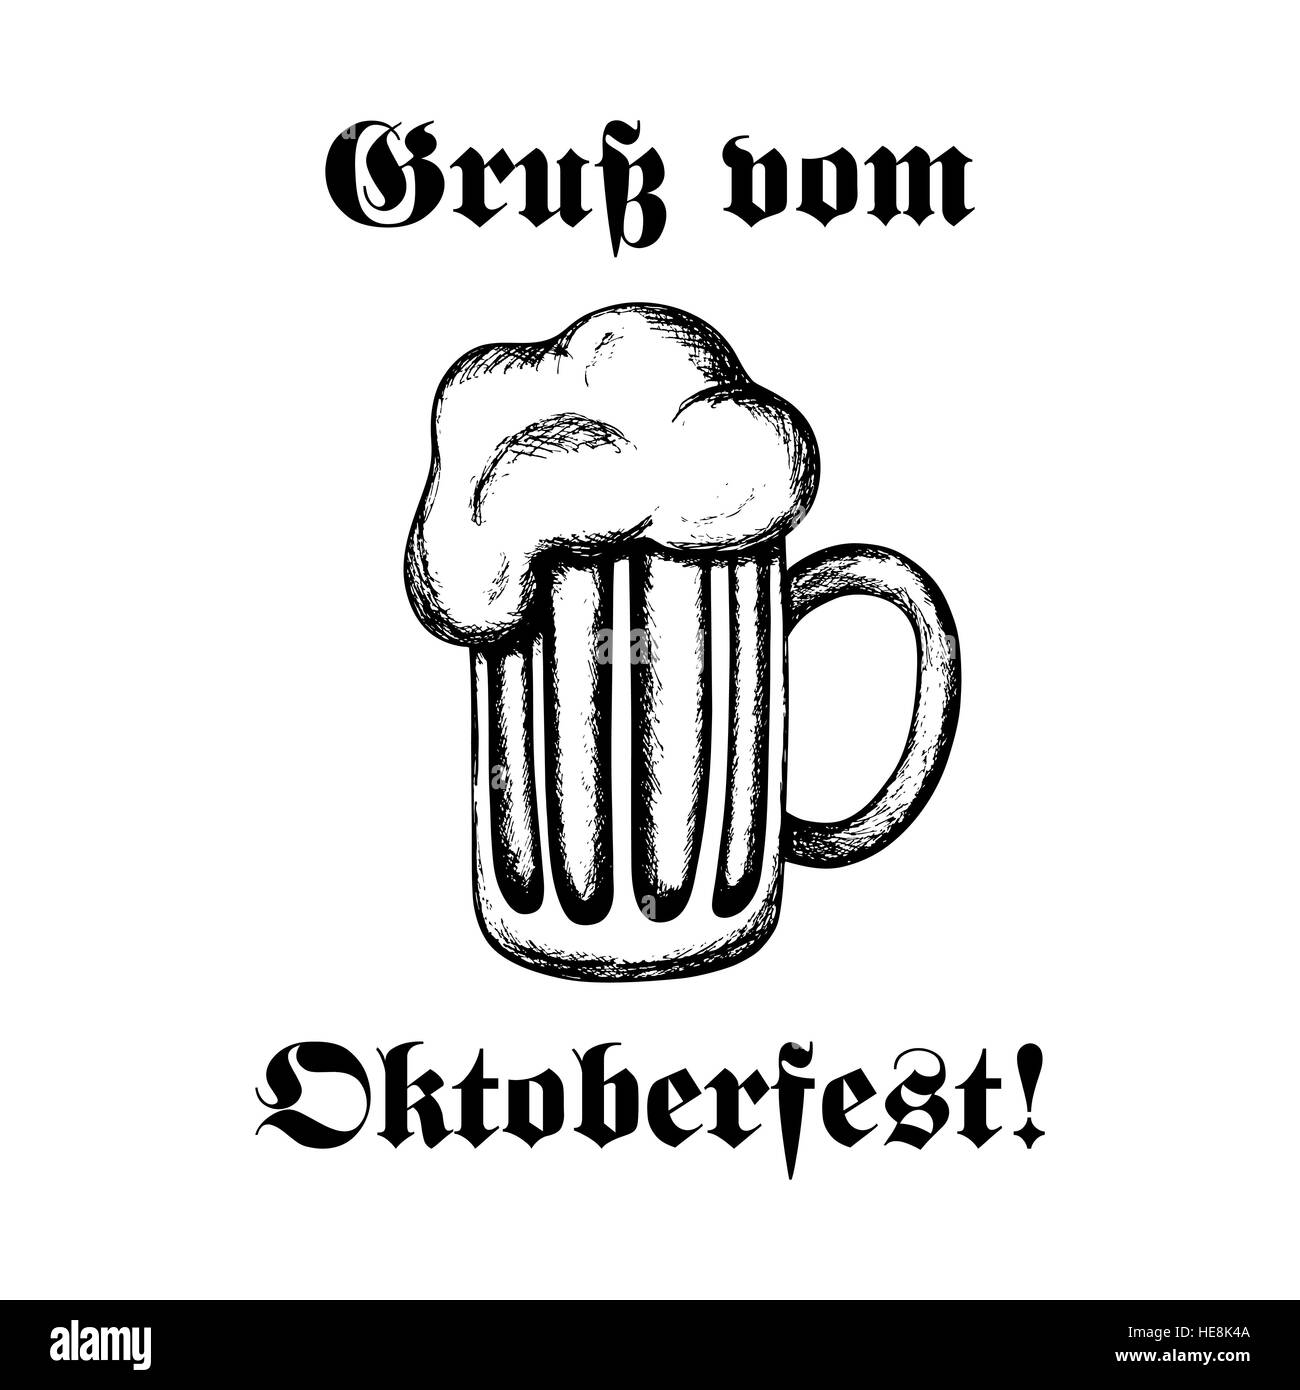 Vector illustration dessinée à la main d'une bière. Célébration de l'Oktoberfest. Texte en allemand : "Salutations de Oktoberfest !' Illustration de Vecteur